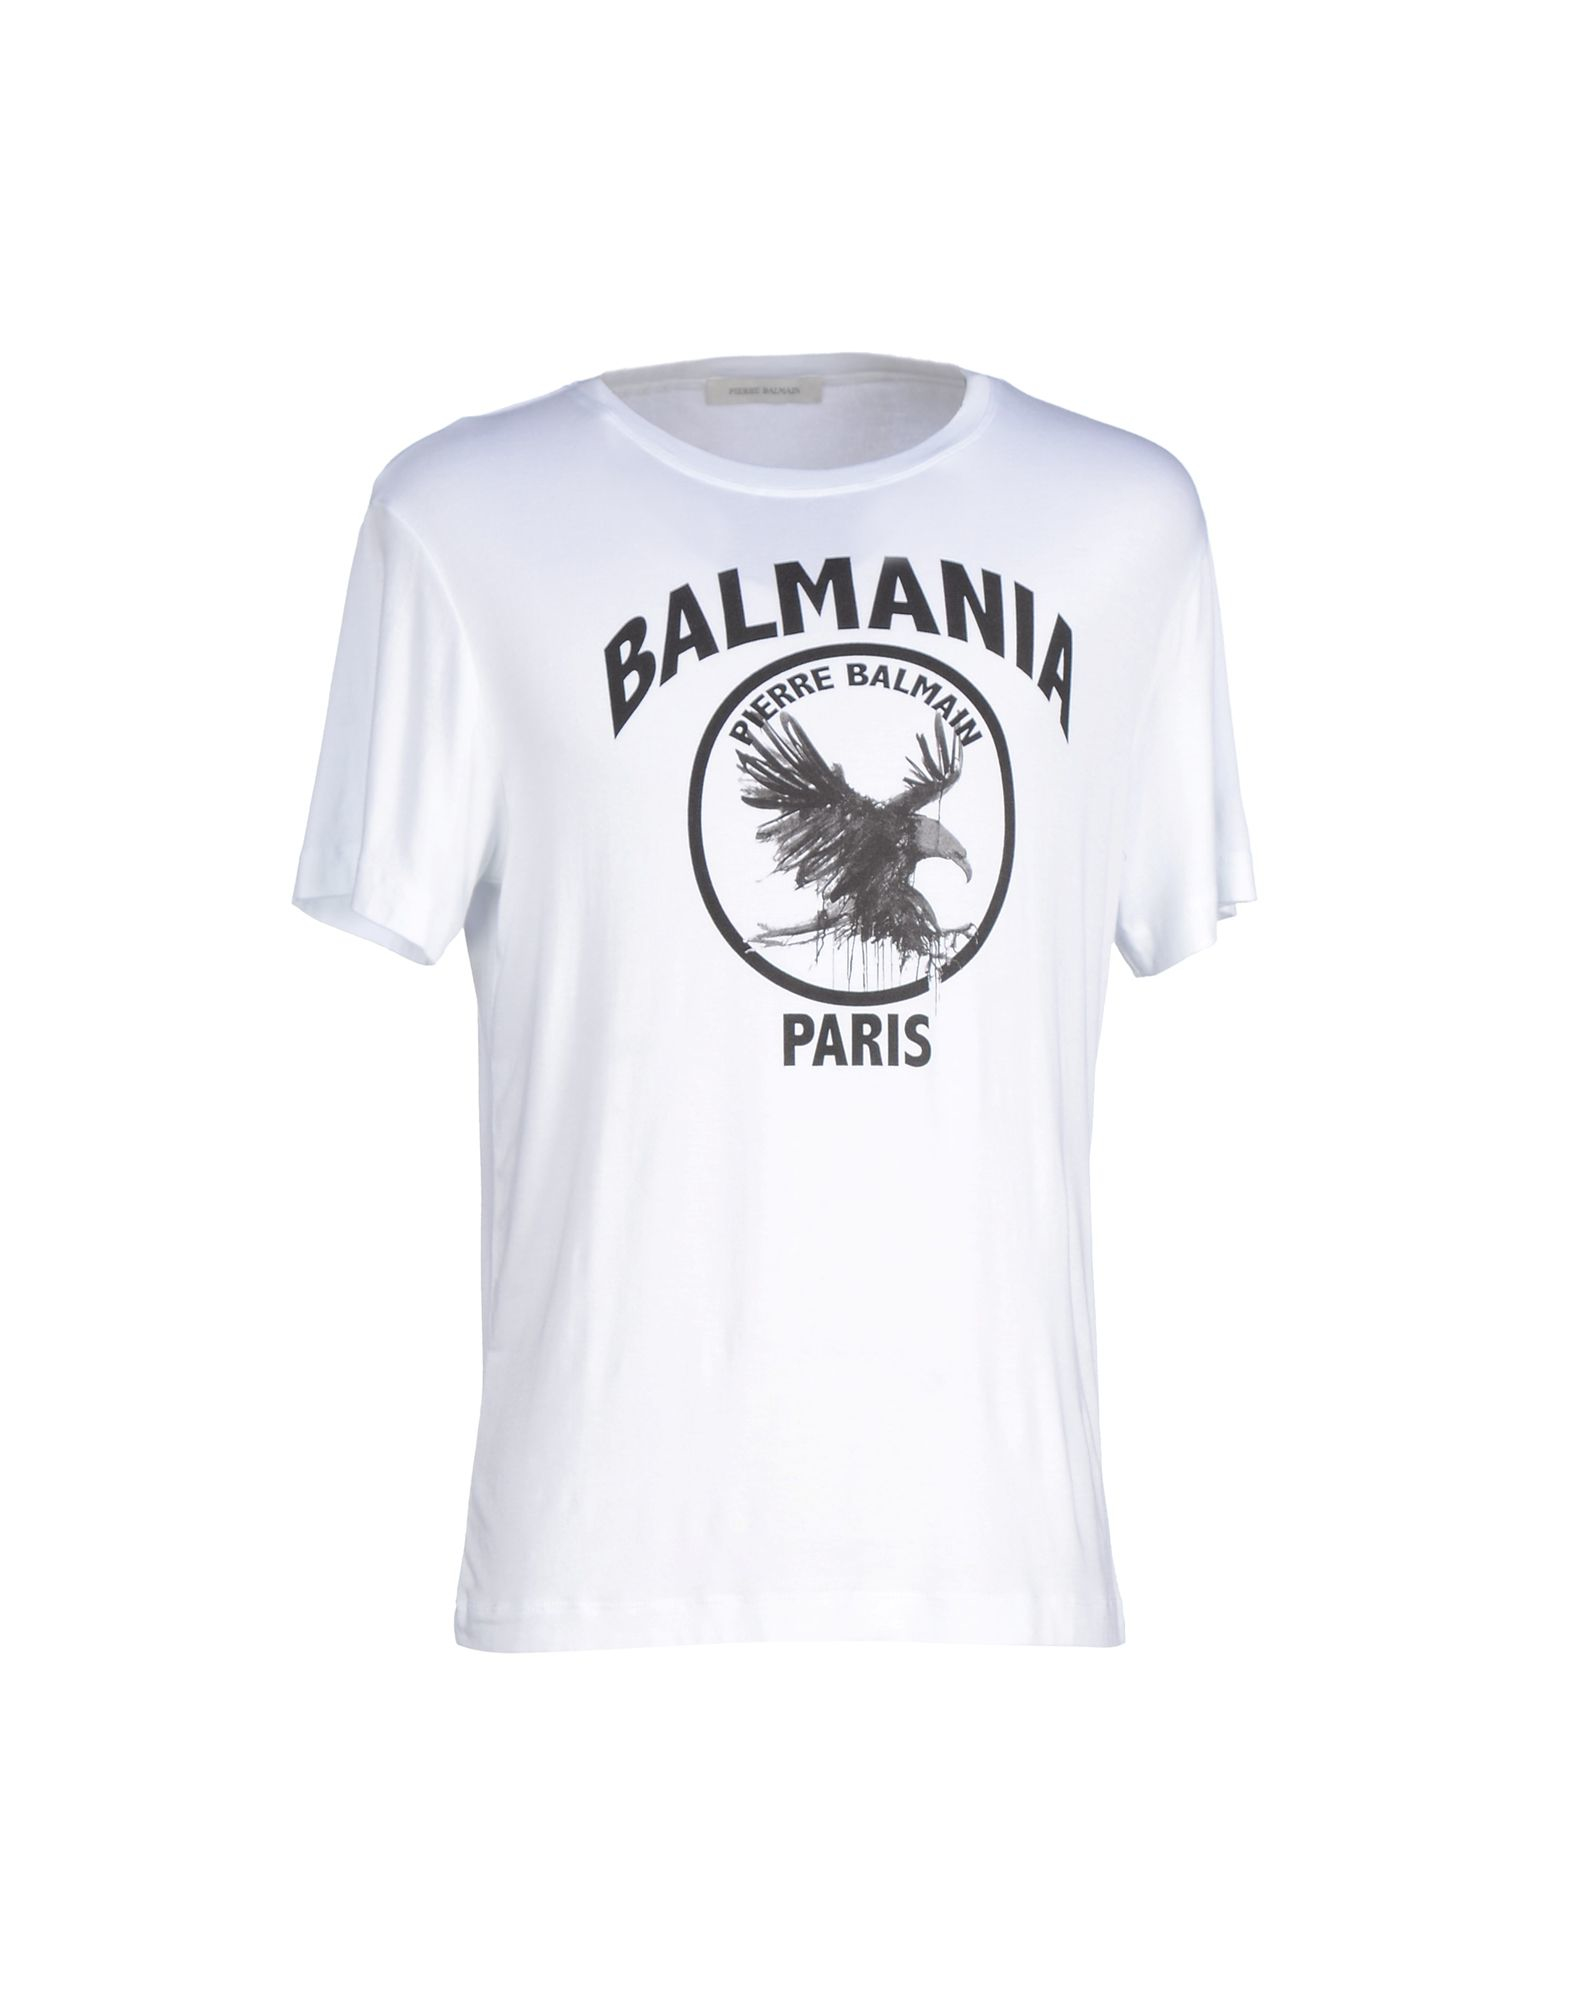 Lyst - Balmain T-shirt in White for Men